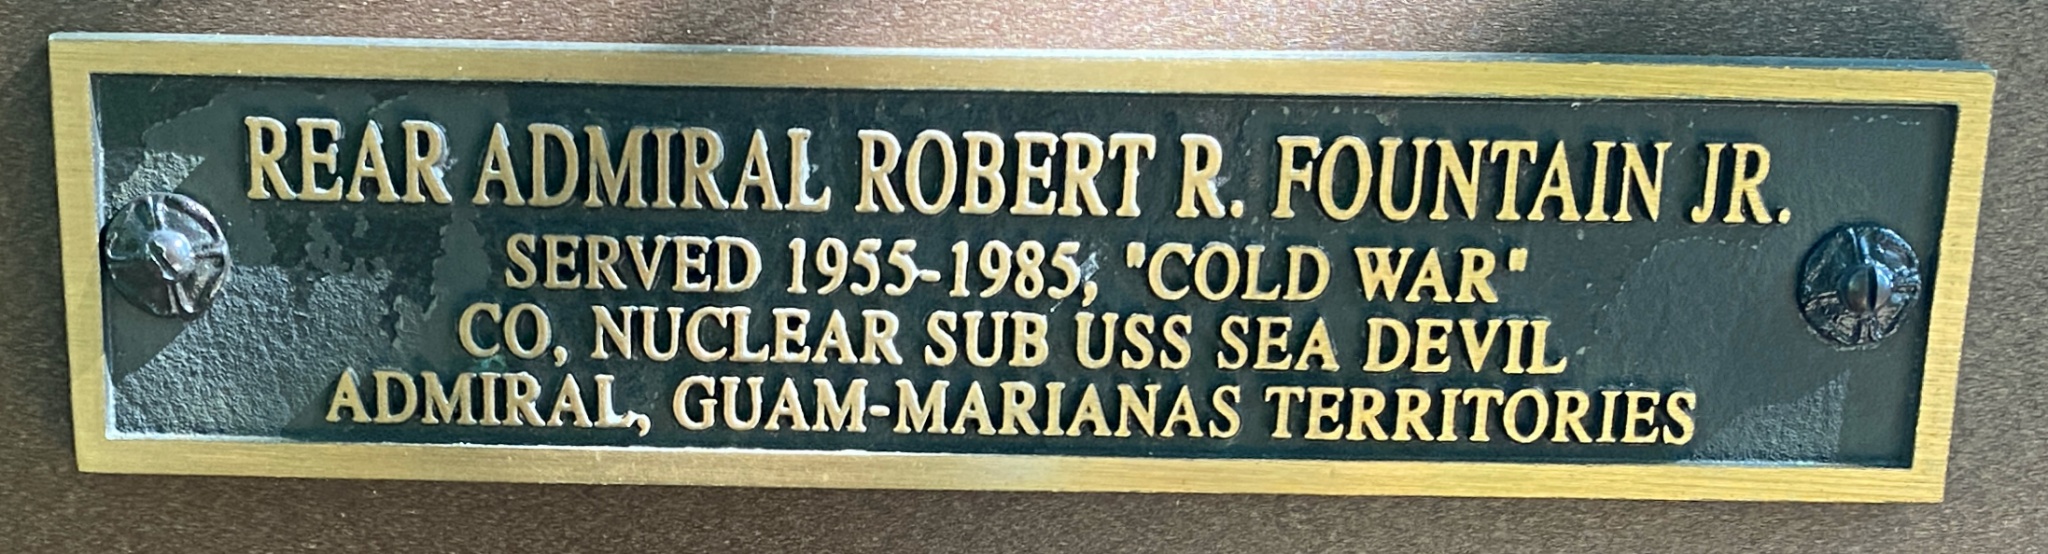 READ ADMIRAL ROBERT R. FOUNTAIN JR. SERVED 1955-1985 “Cold War” CO. NUCLEAAR SUB USS SEA DEVIL ADMIRAL, GUAM-MARIANAS TERRITORIES